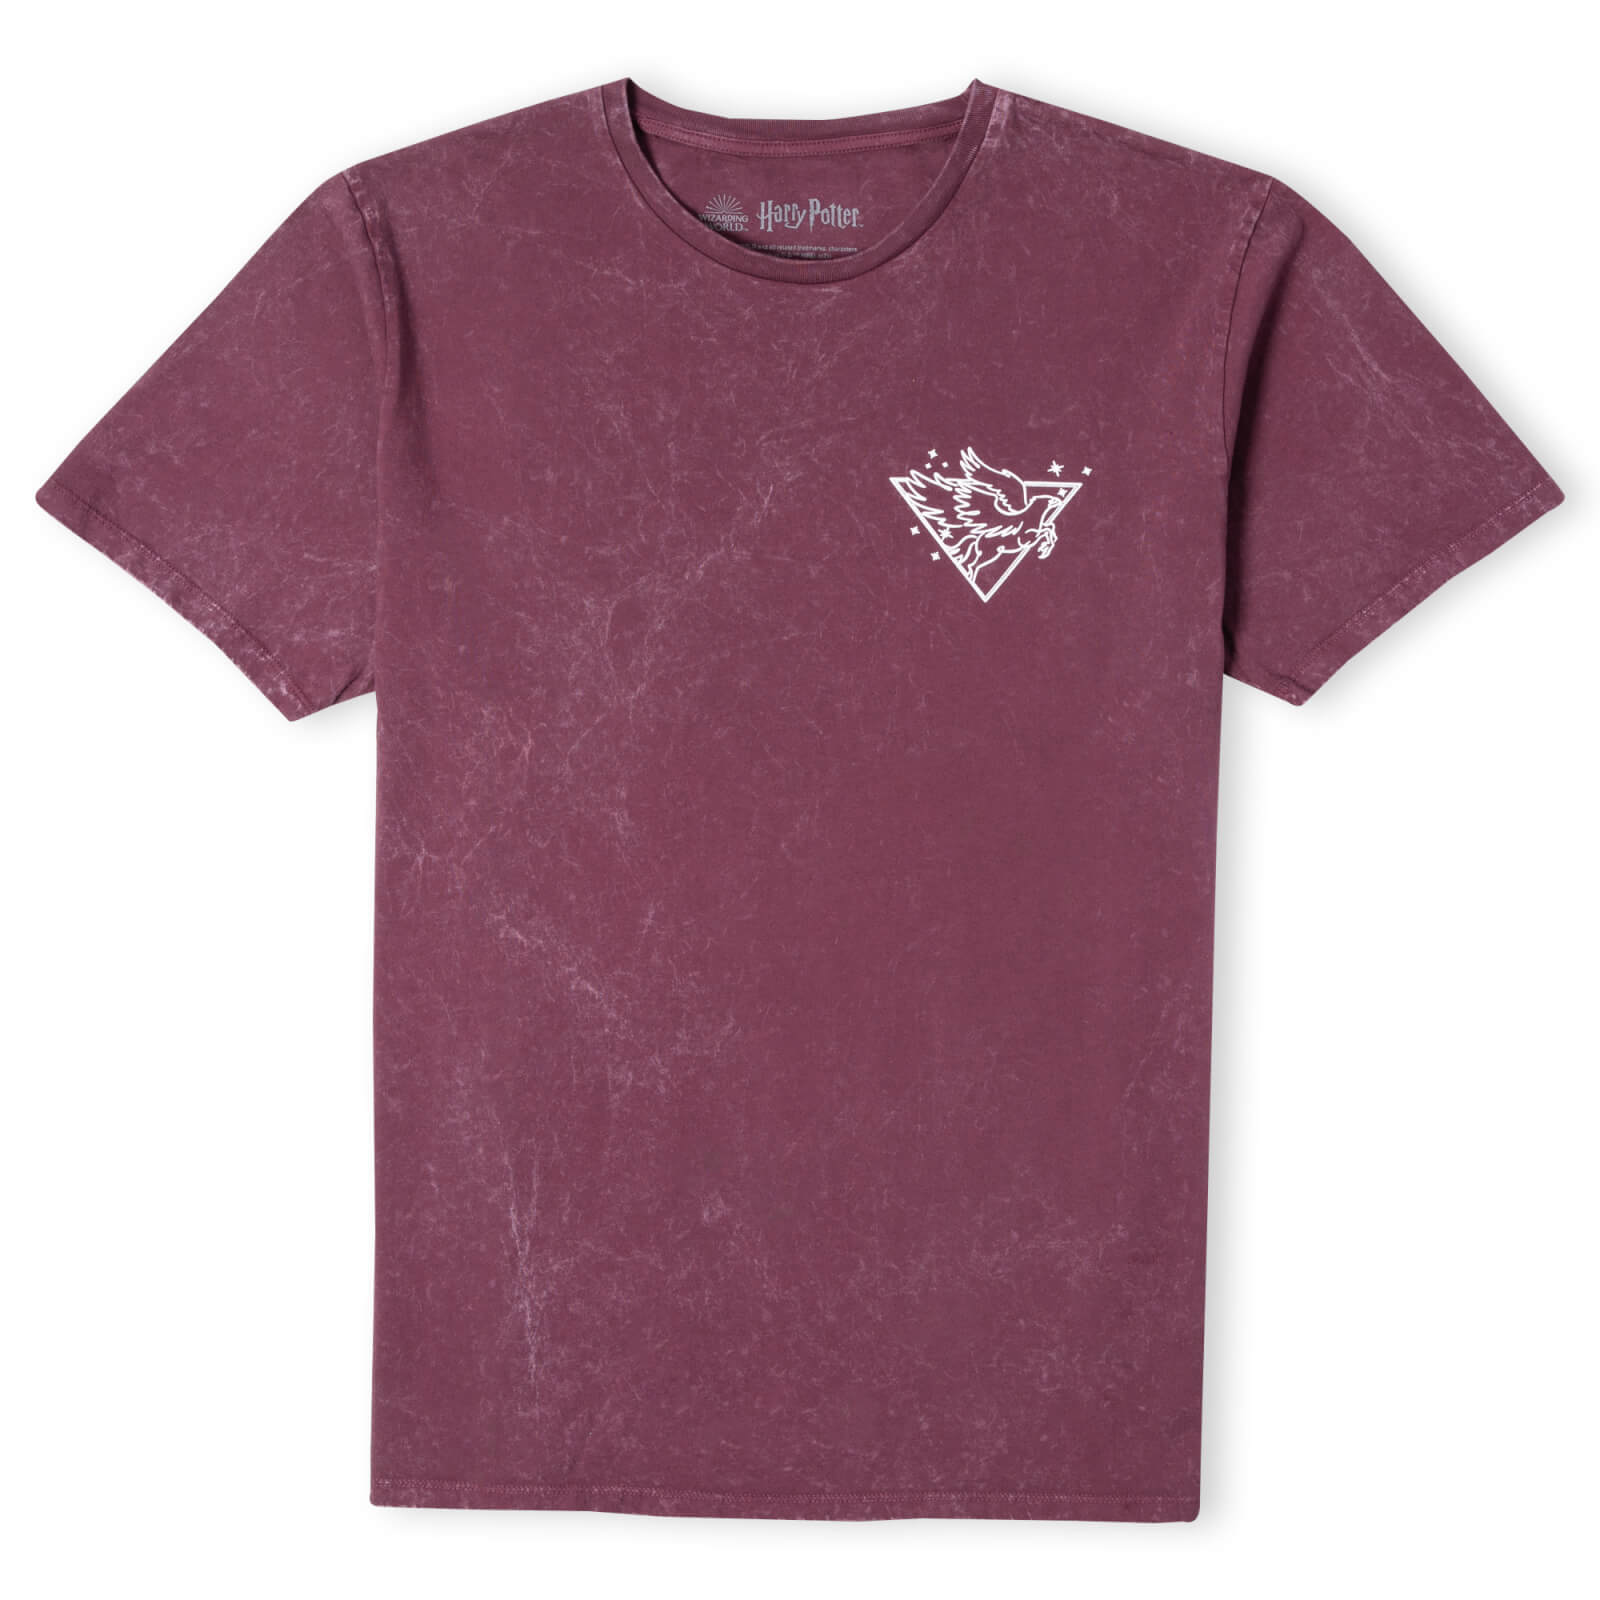 Harry Potter Buckbeak Metallic Pocket Print Unisex T-Shirt - Burgundy Acid - XXL